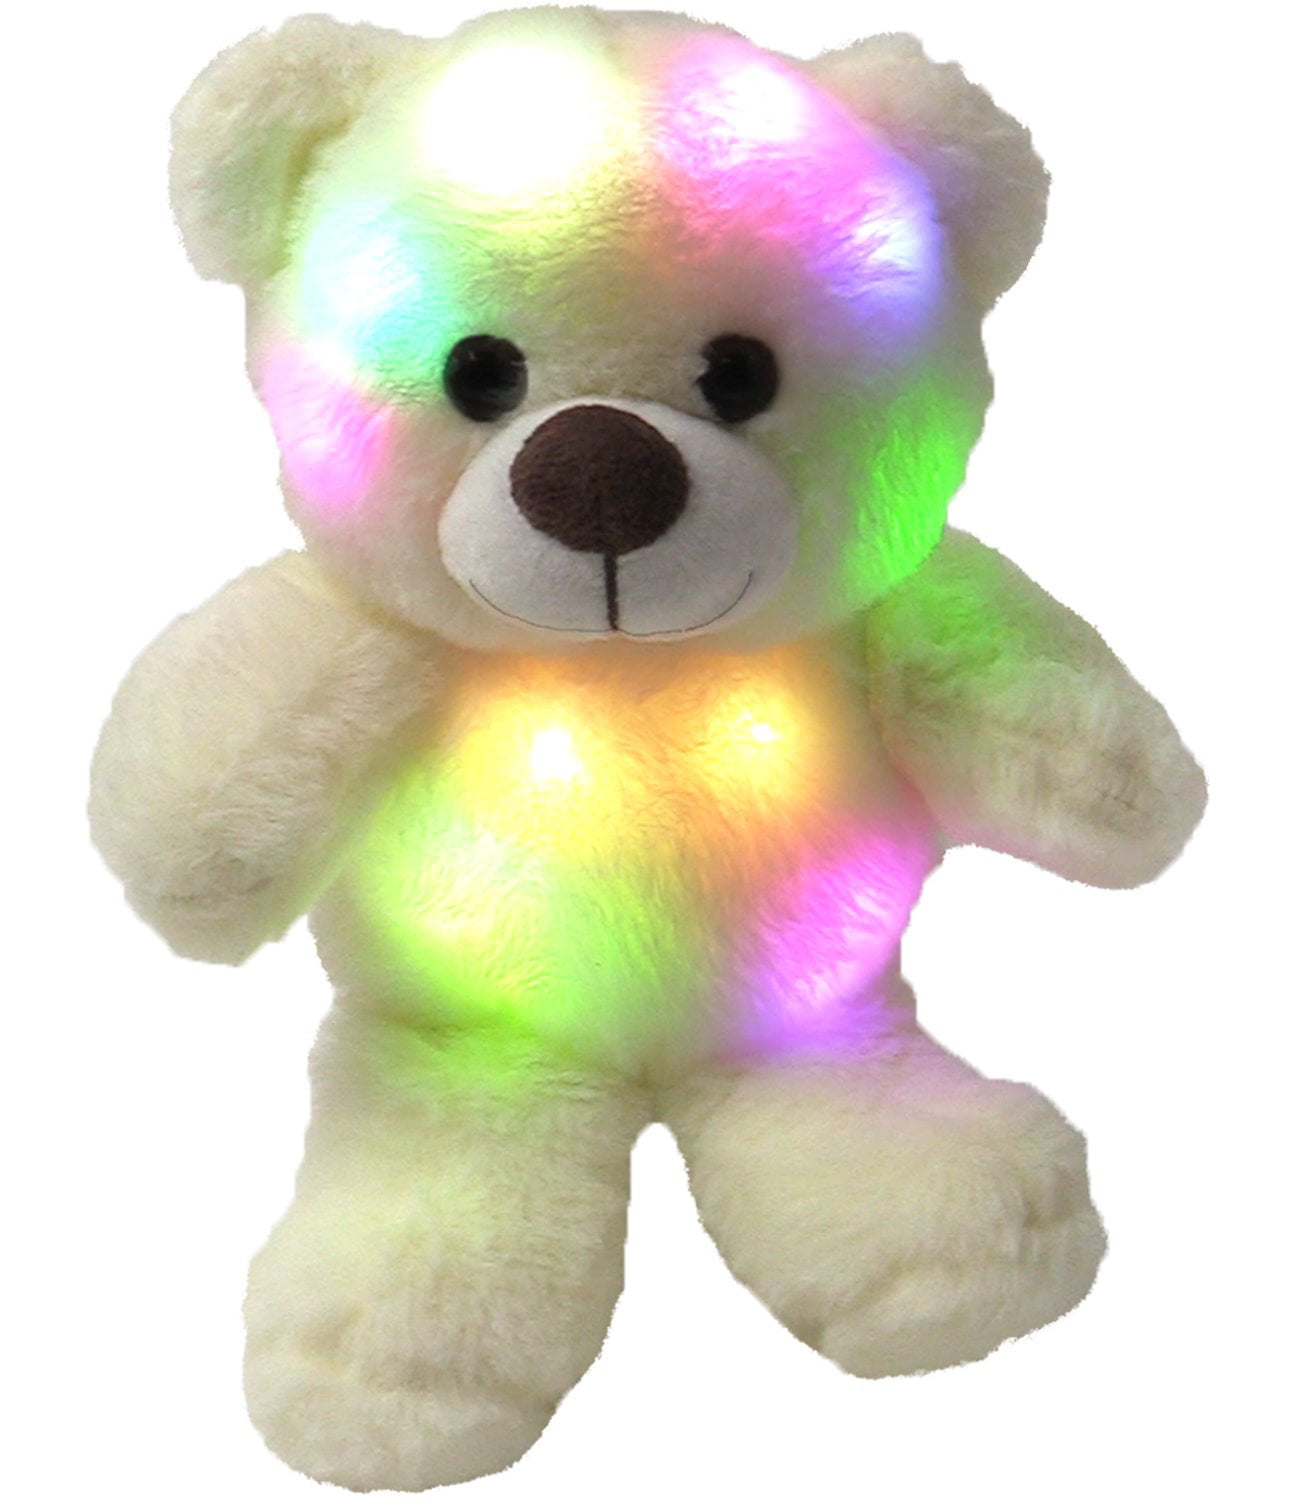 teddy bear pinkfong